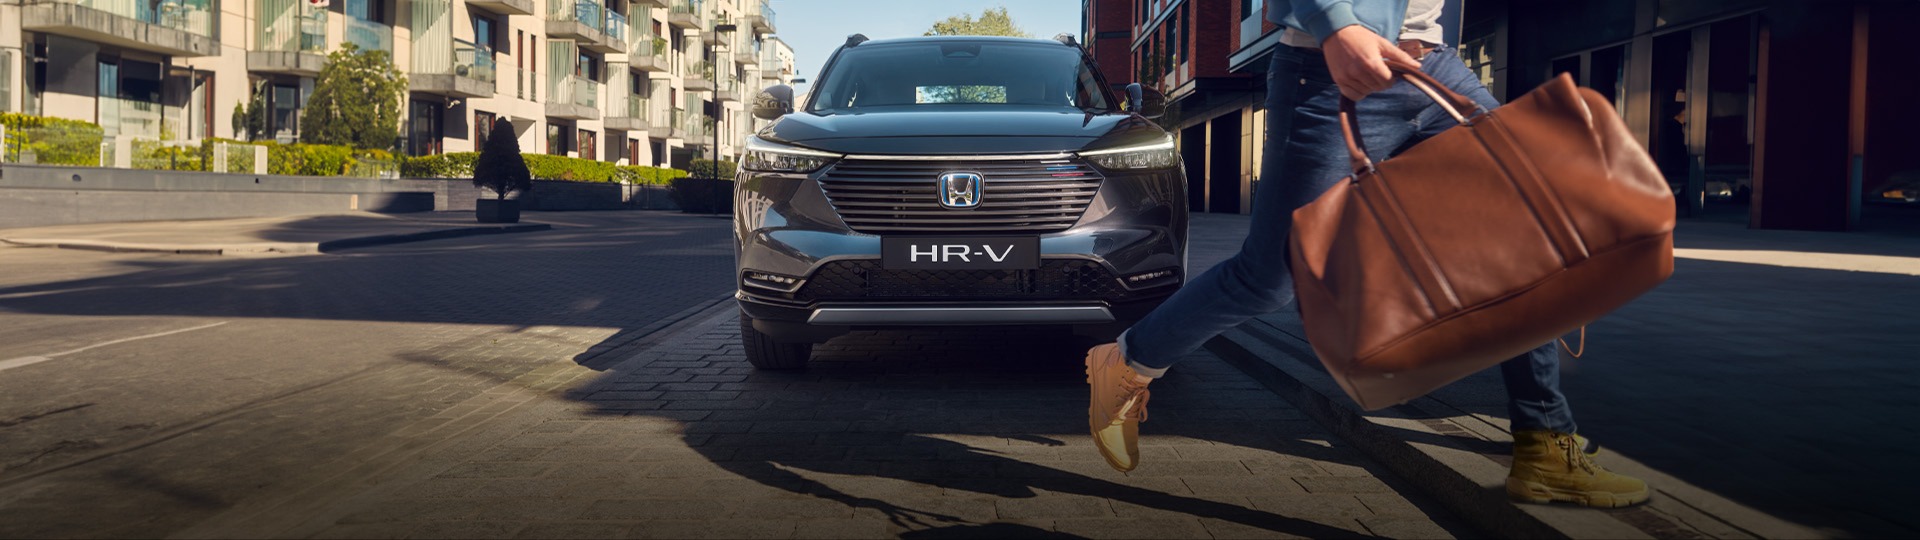 Honda Plaza  Kaval Hayalinizdeki HR-V'ye giden yolu kısalttık.